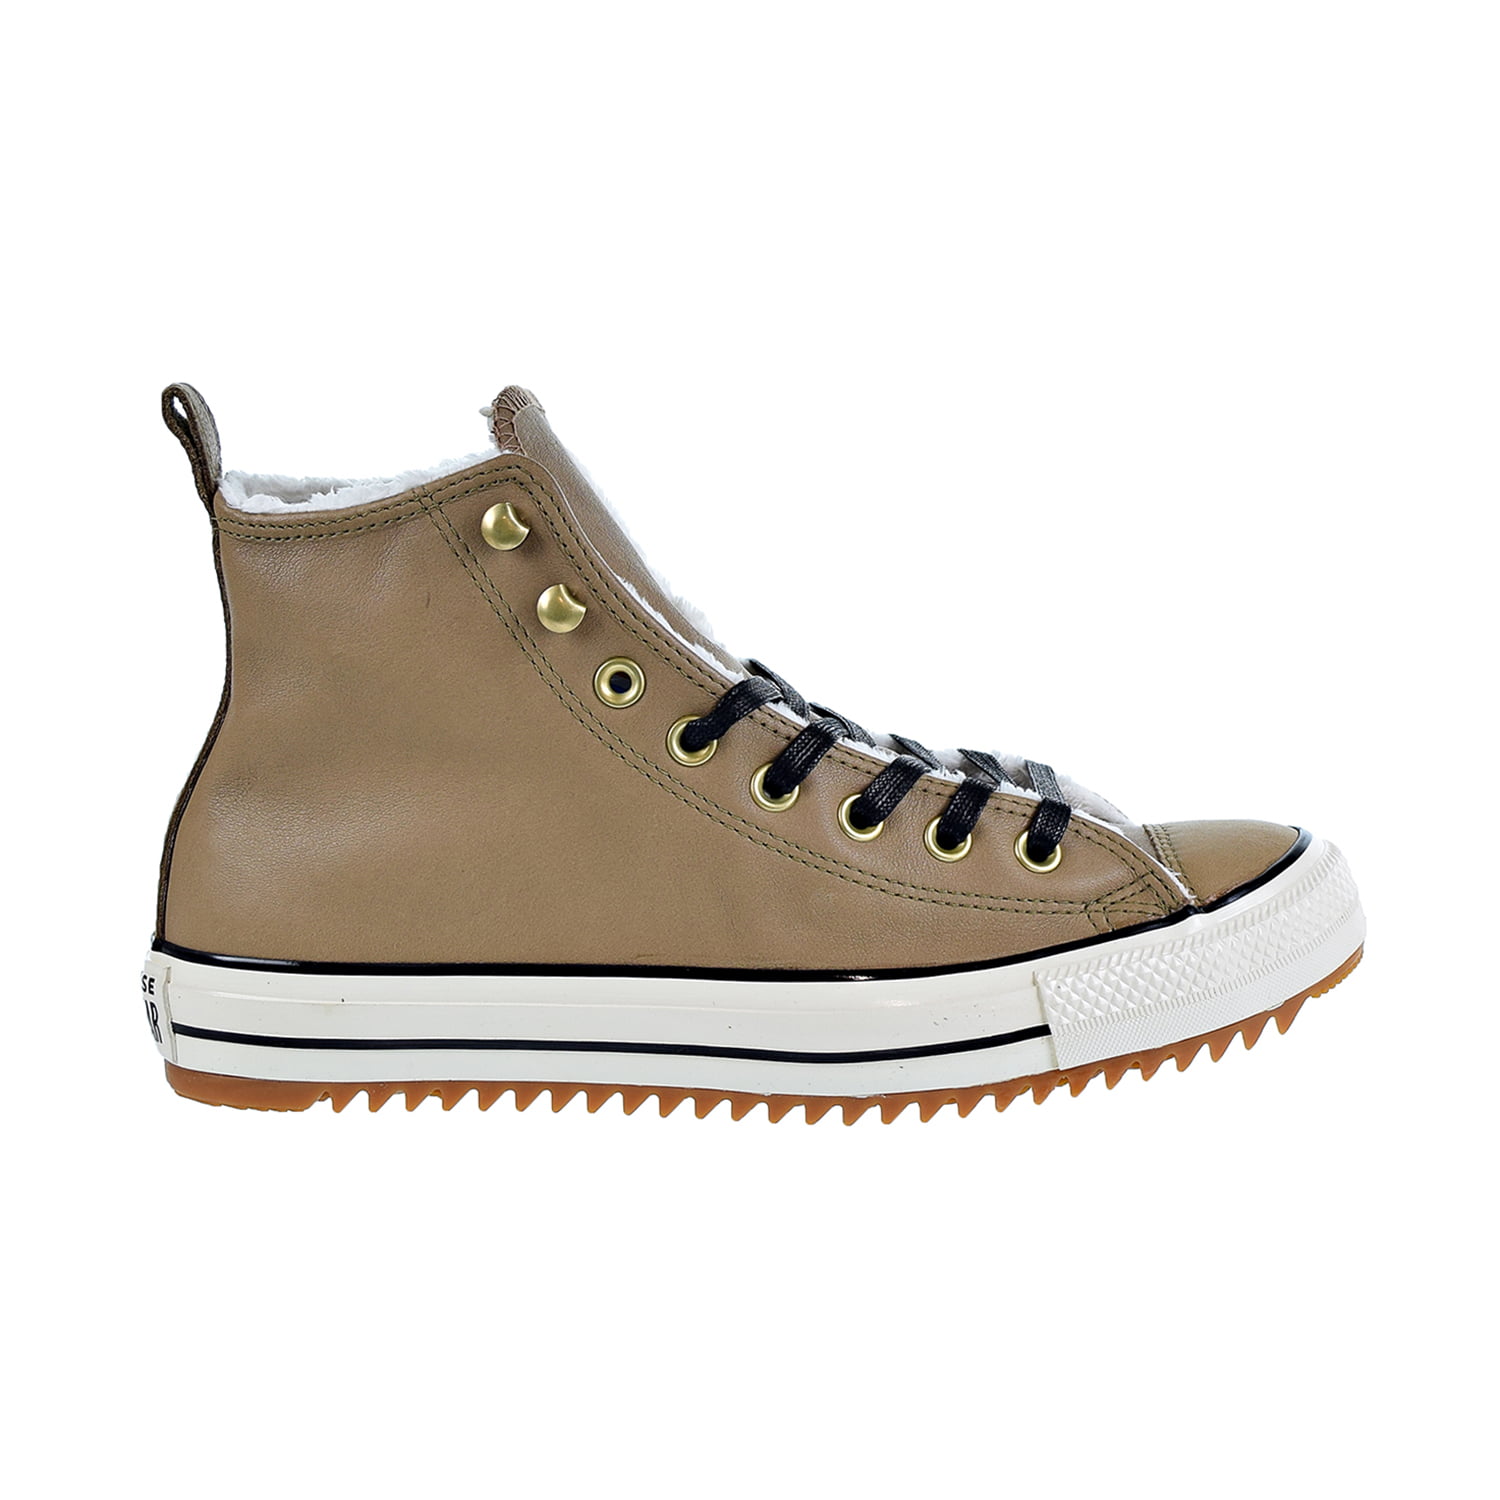 Converse Taylor All Star Hiker Boot Hi Shoes Teak-Black-Ivory 162479c - Walmart.com